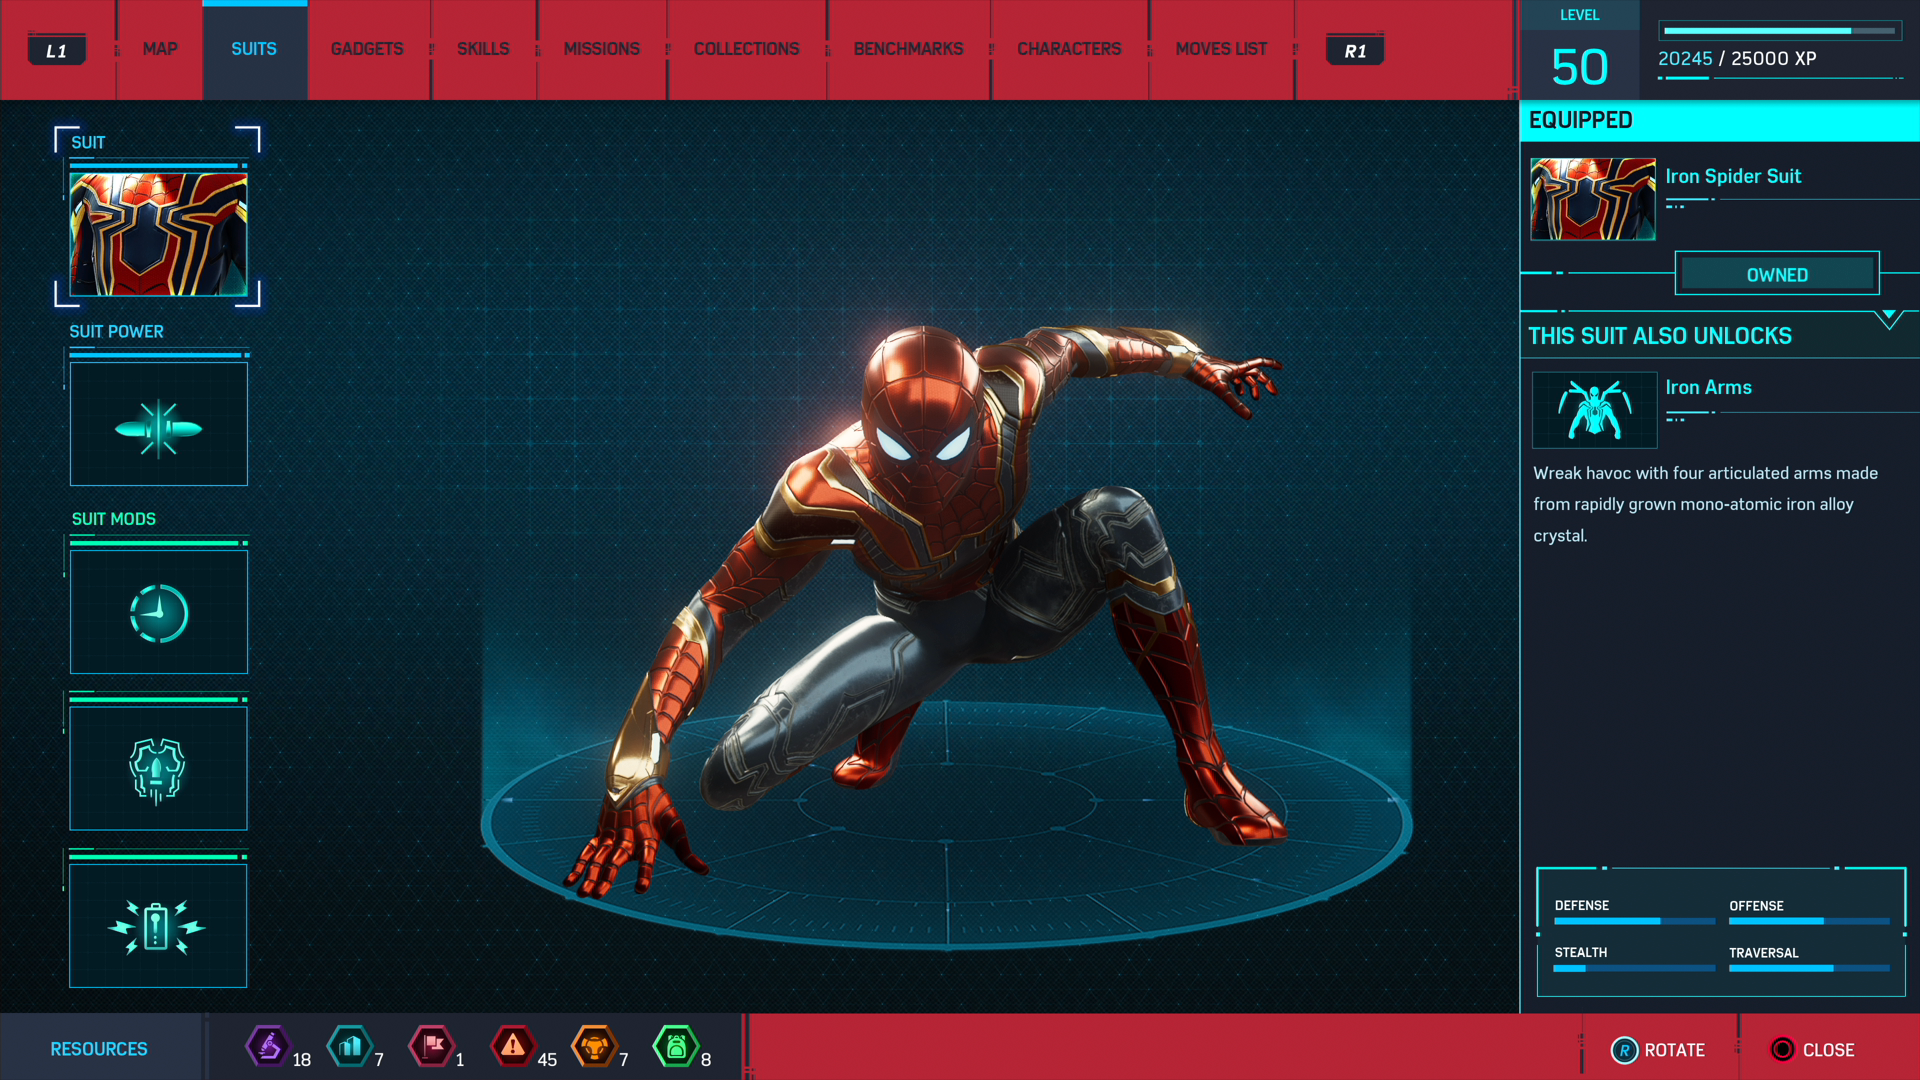 Nếu bạn đam mê siêu anh hùng, hẳn bạn sẽ yêu thích Iron Spider Man! Cùng xem hình ảnh liên quan và khám phá thiết kế đầy bất ngờ của chiếc áo giáp này nhé!